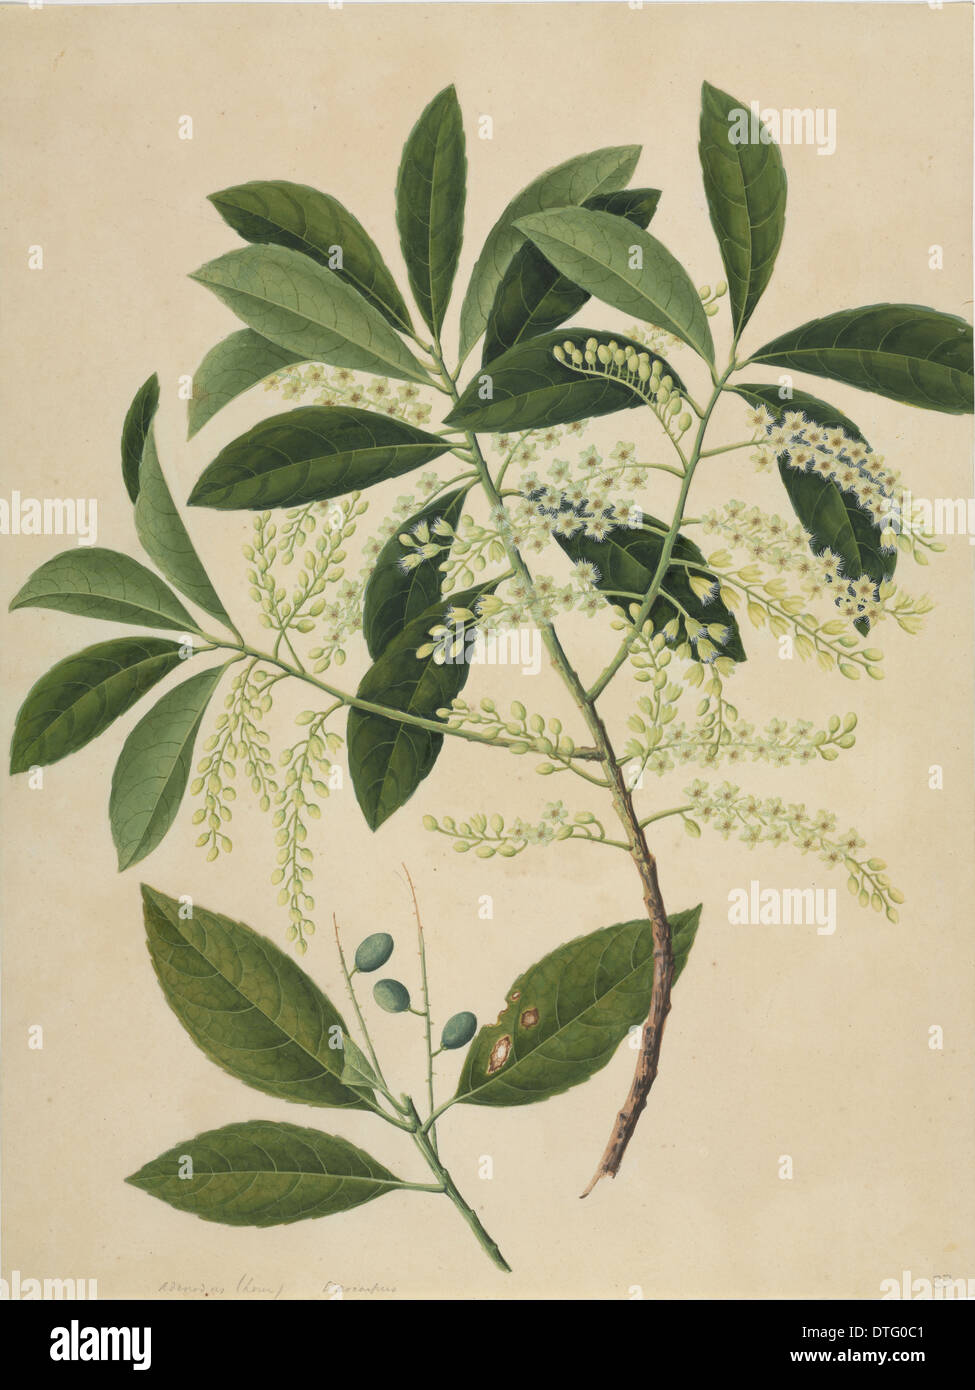 Elaeocarpus sp. Stock Photo